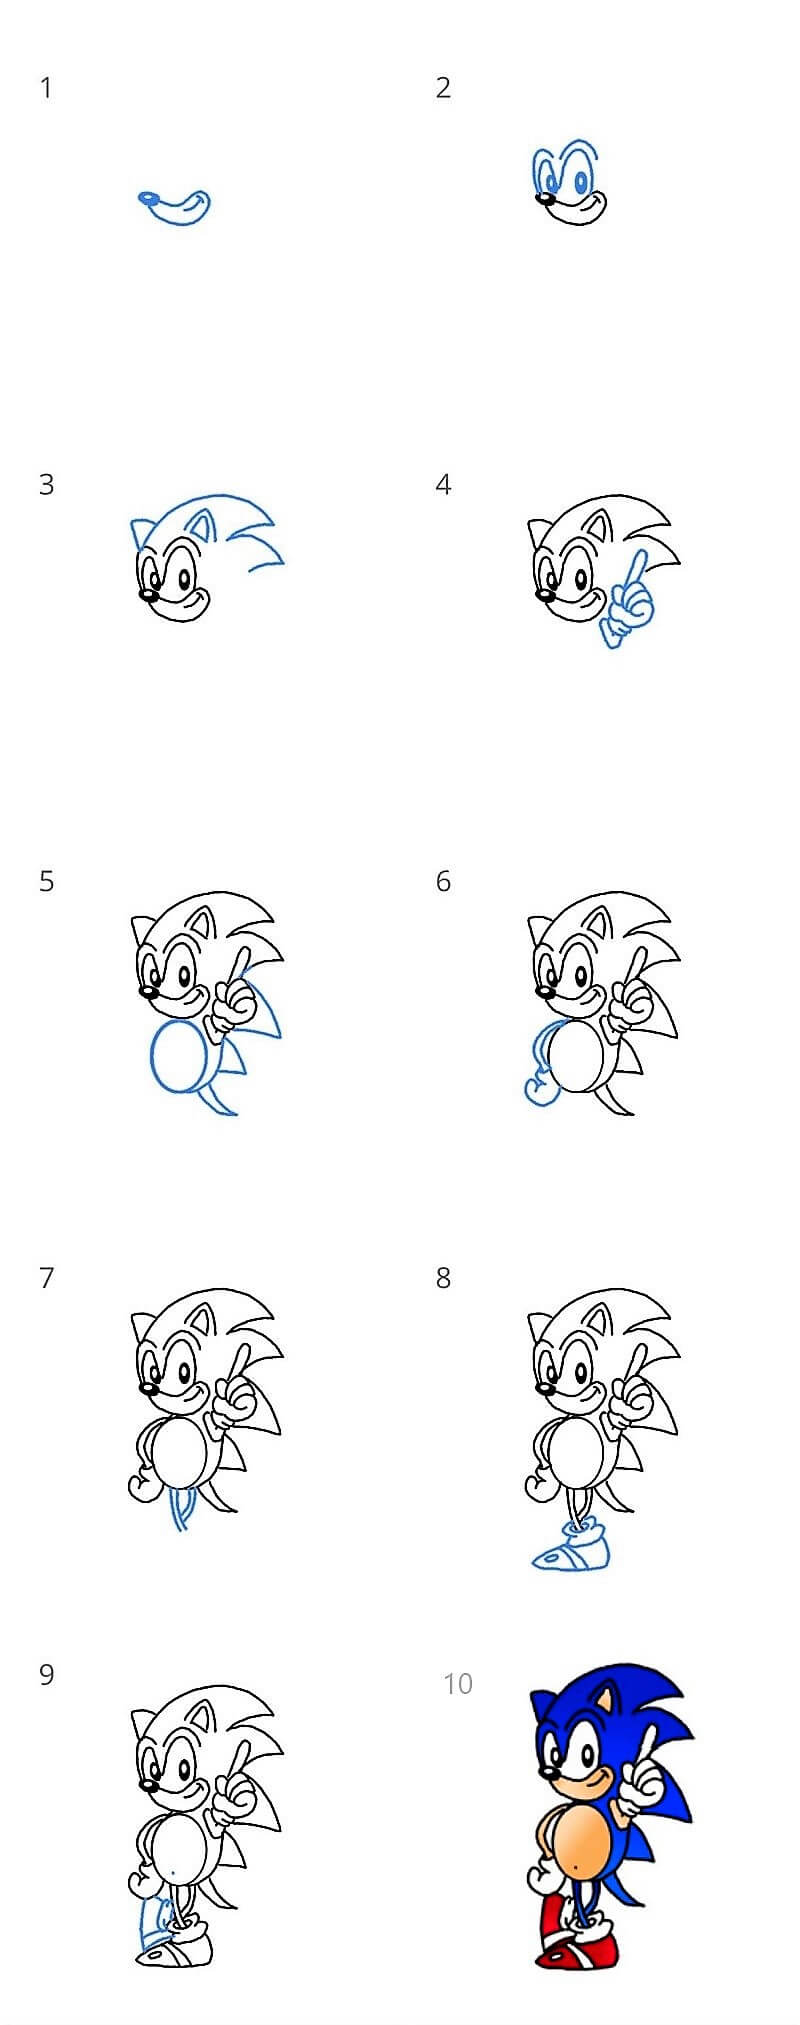 Sonic - Idee 10 zeichnen ideen